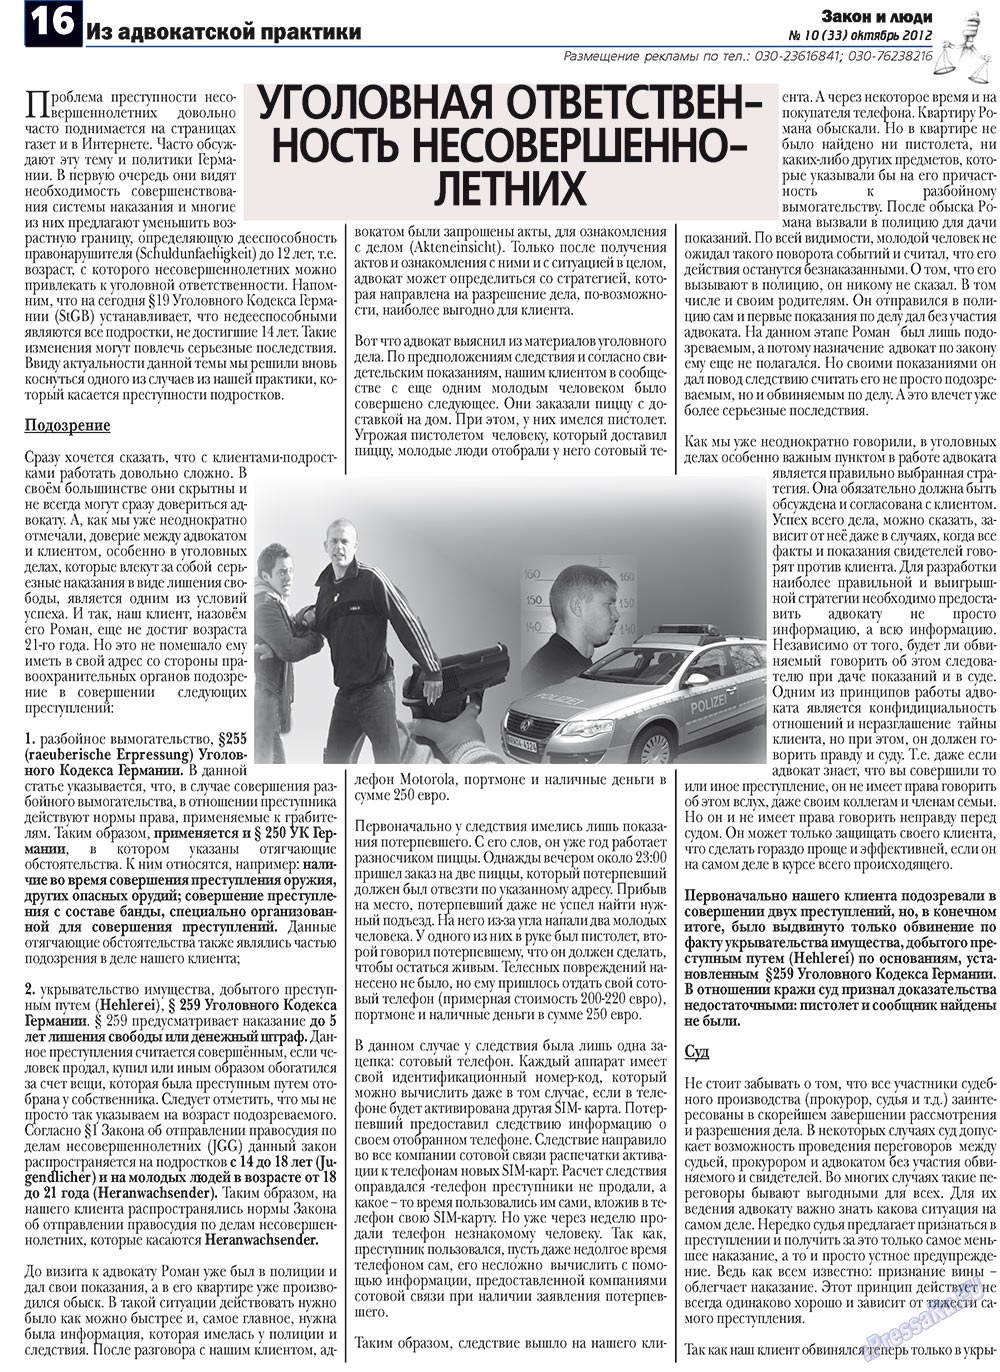 Закон и люди, газета. 2012 №10 стр.16